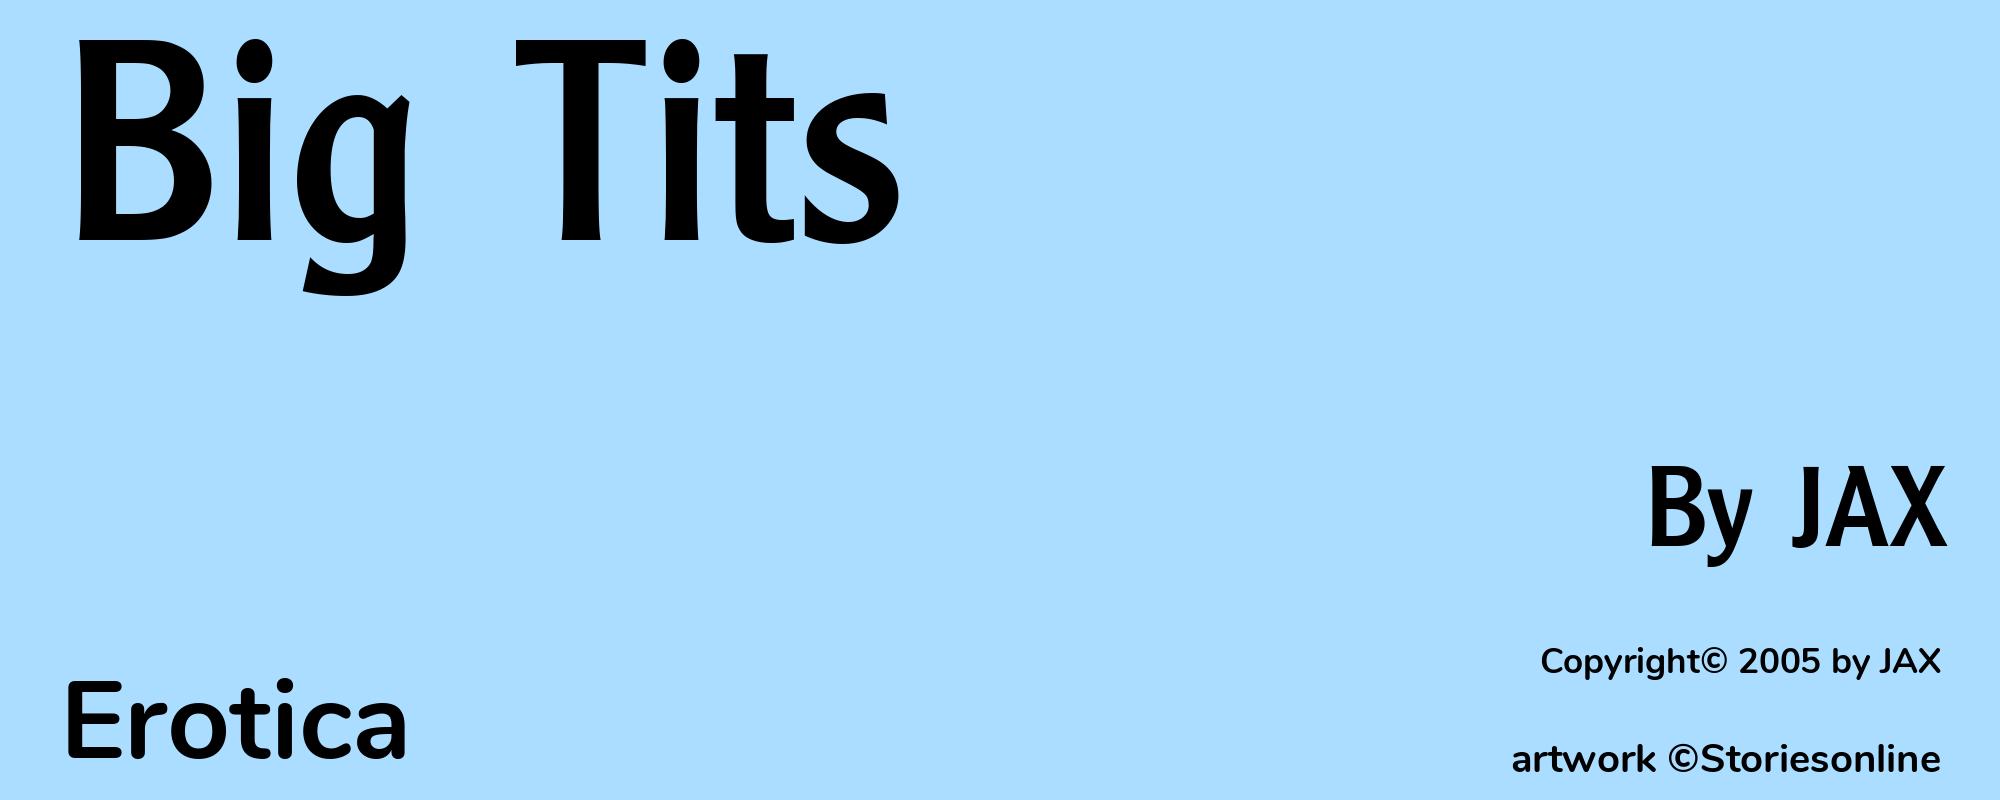 Big Tits - Cover